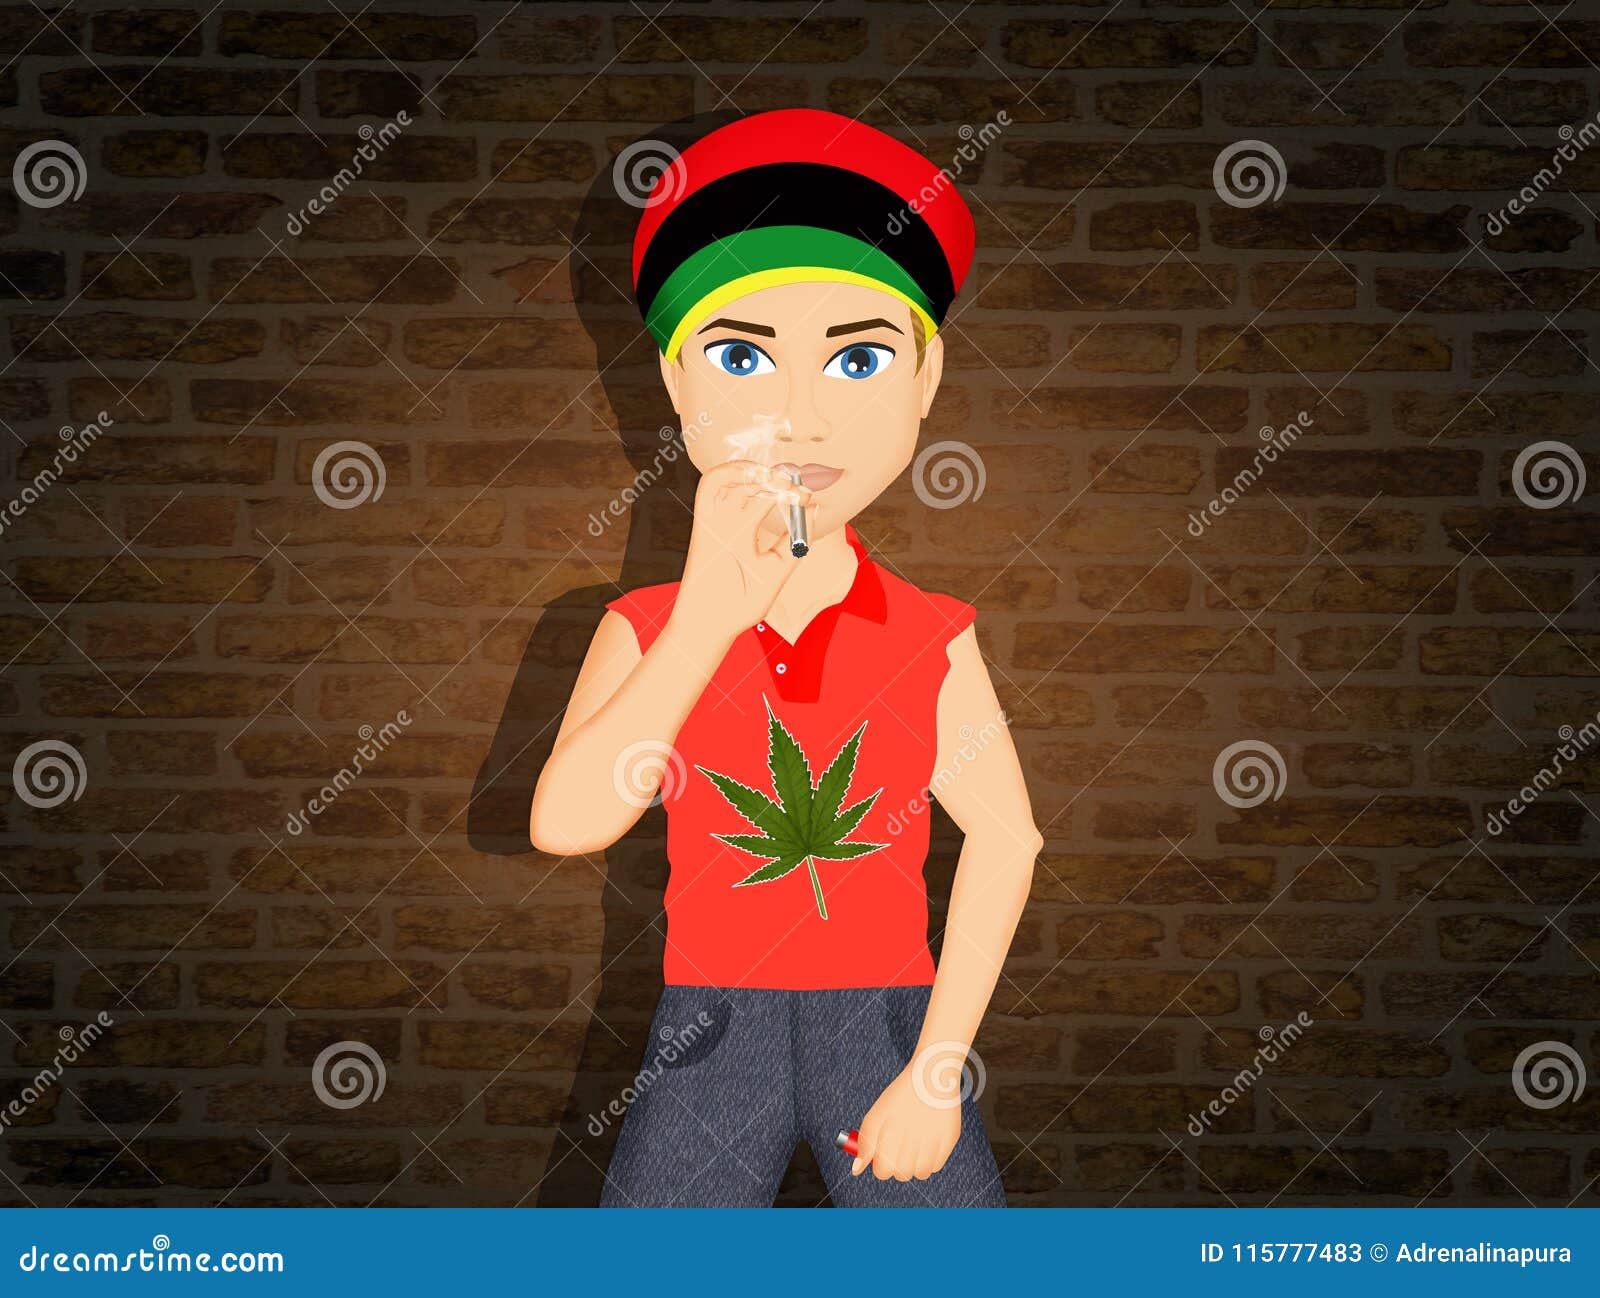 Мальчик курит марихуану почему перестал работать тор браузер gydra